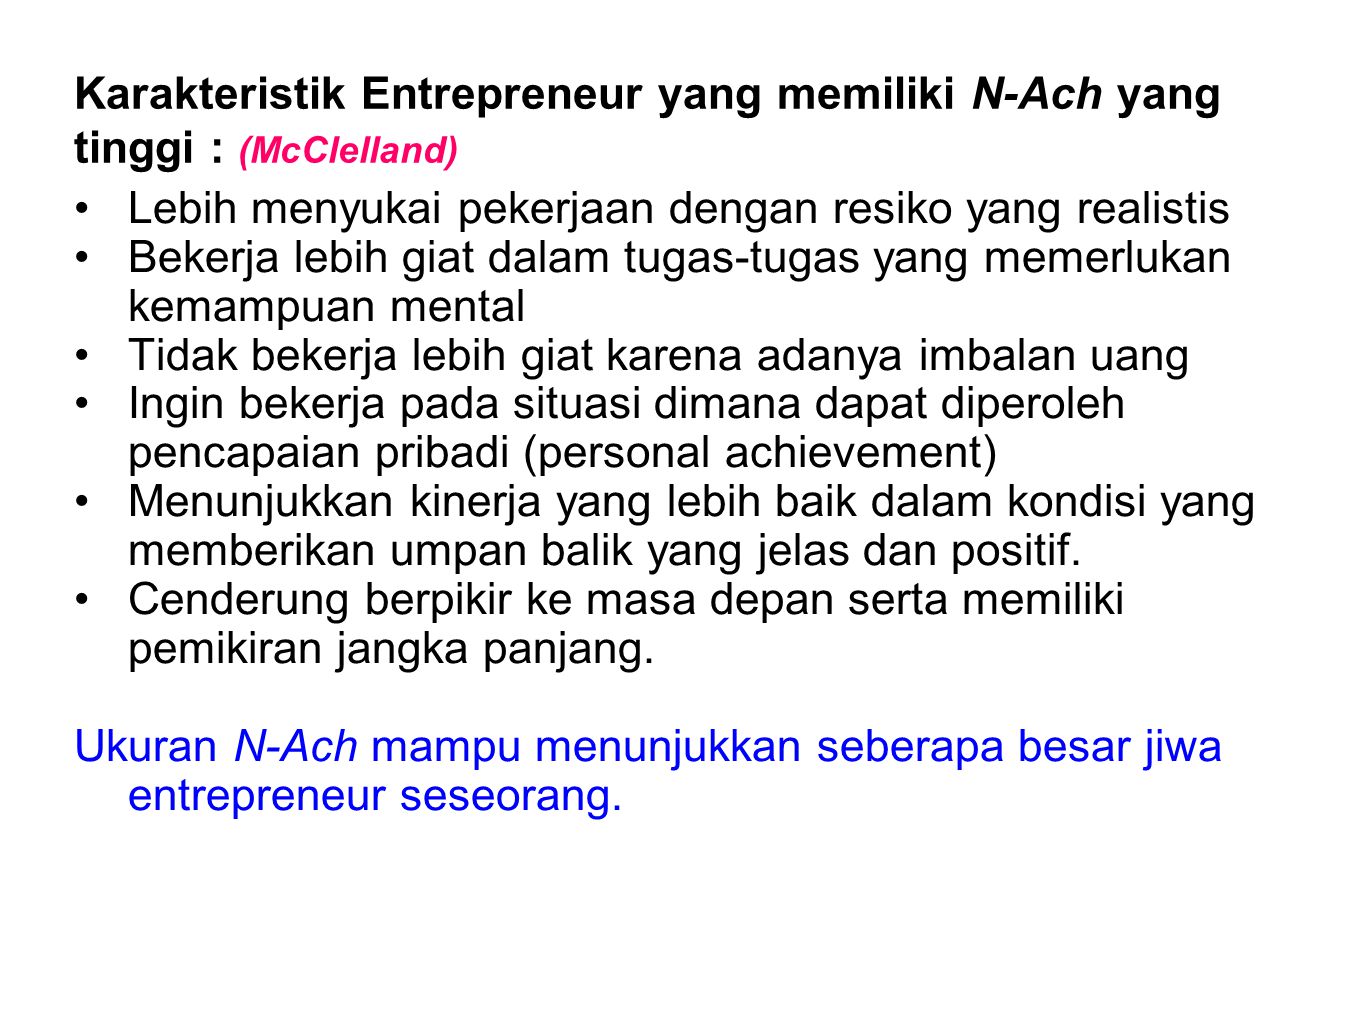 Karakteristik Entrepreneur yang memiliki N-Ach yang tinggi : (McClelland)